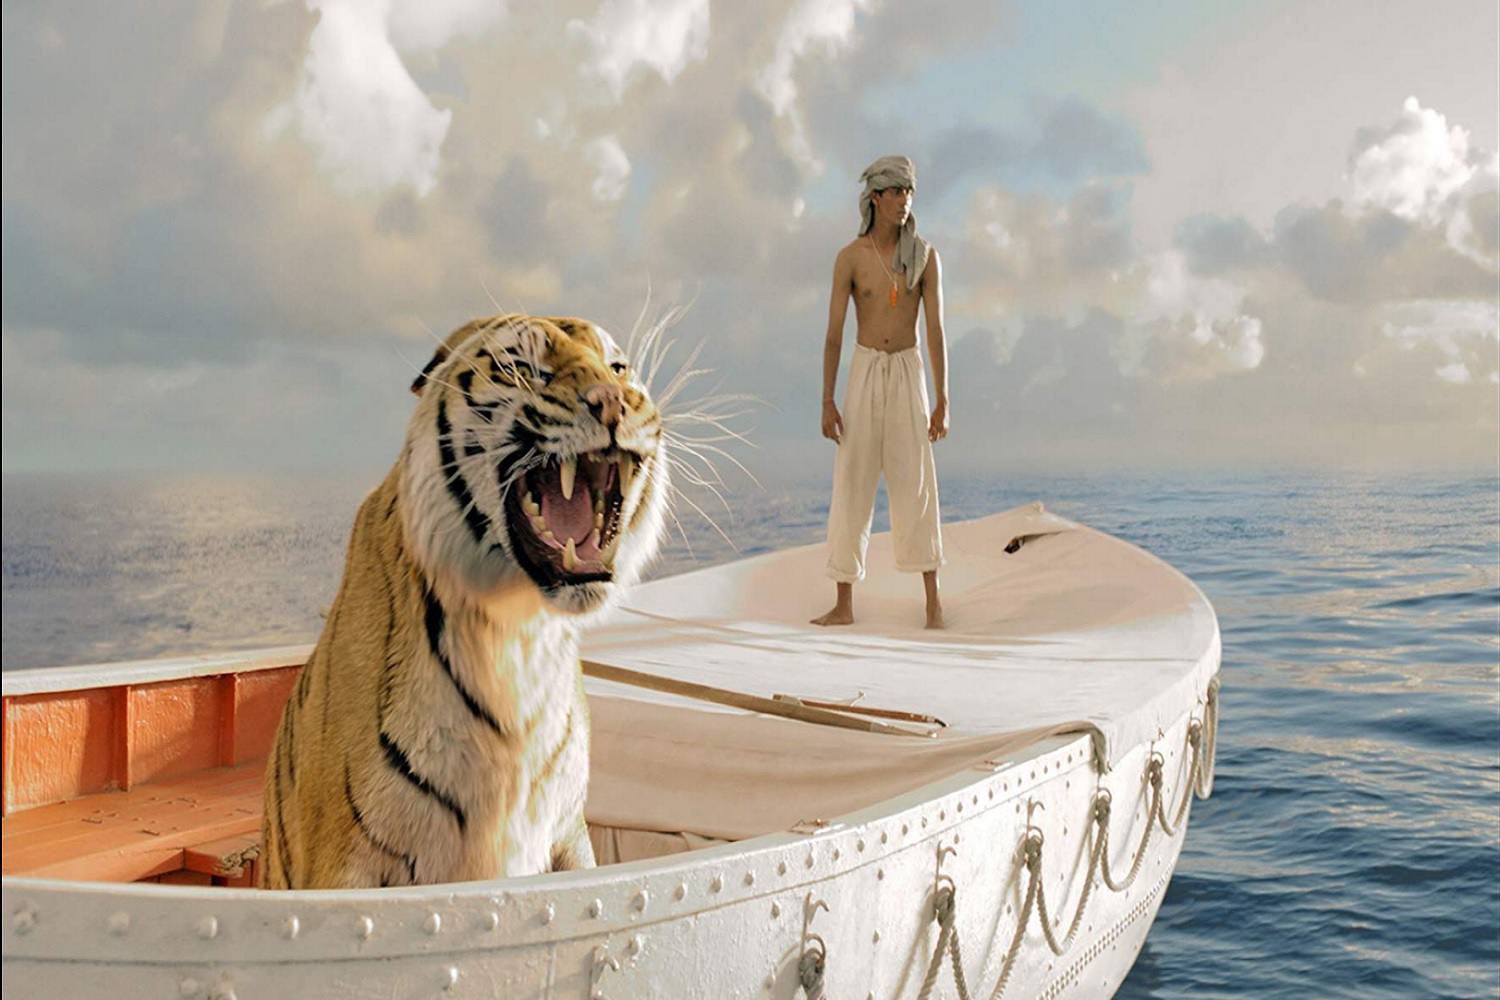 Een screenshot van een scène uit de film Life of Pi.  De scène bevat de hoofdpersoon Pi Patel en een tijger genaamd Richard Parker.